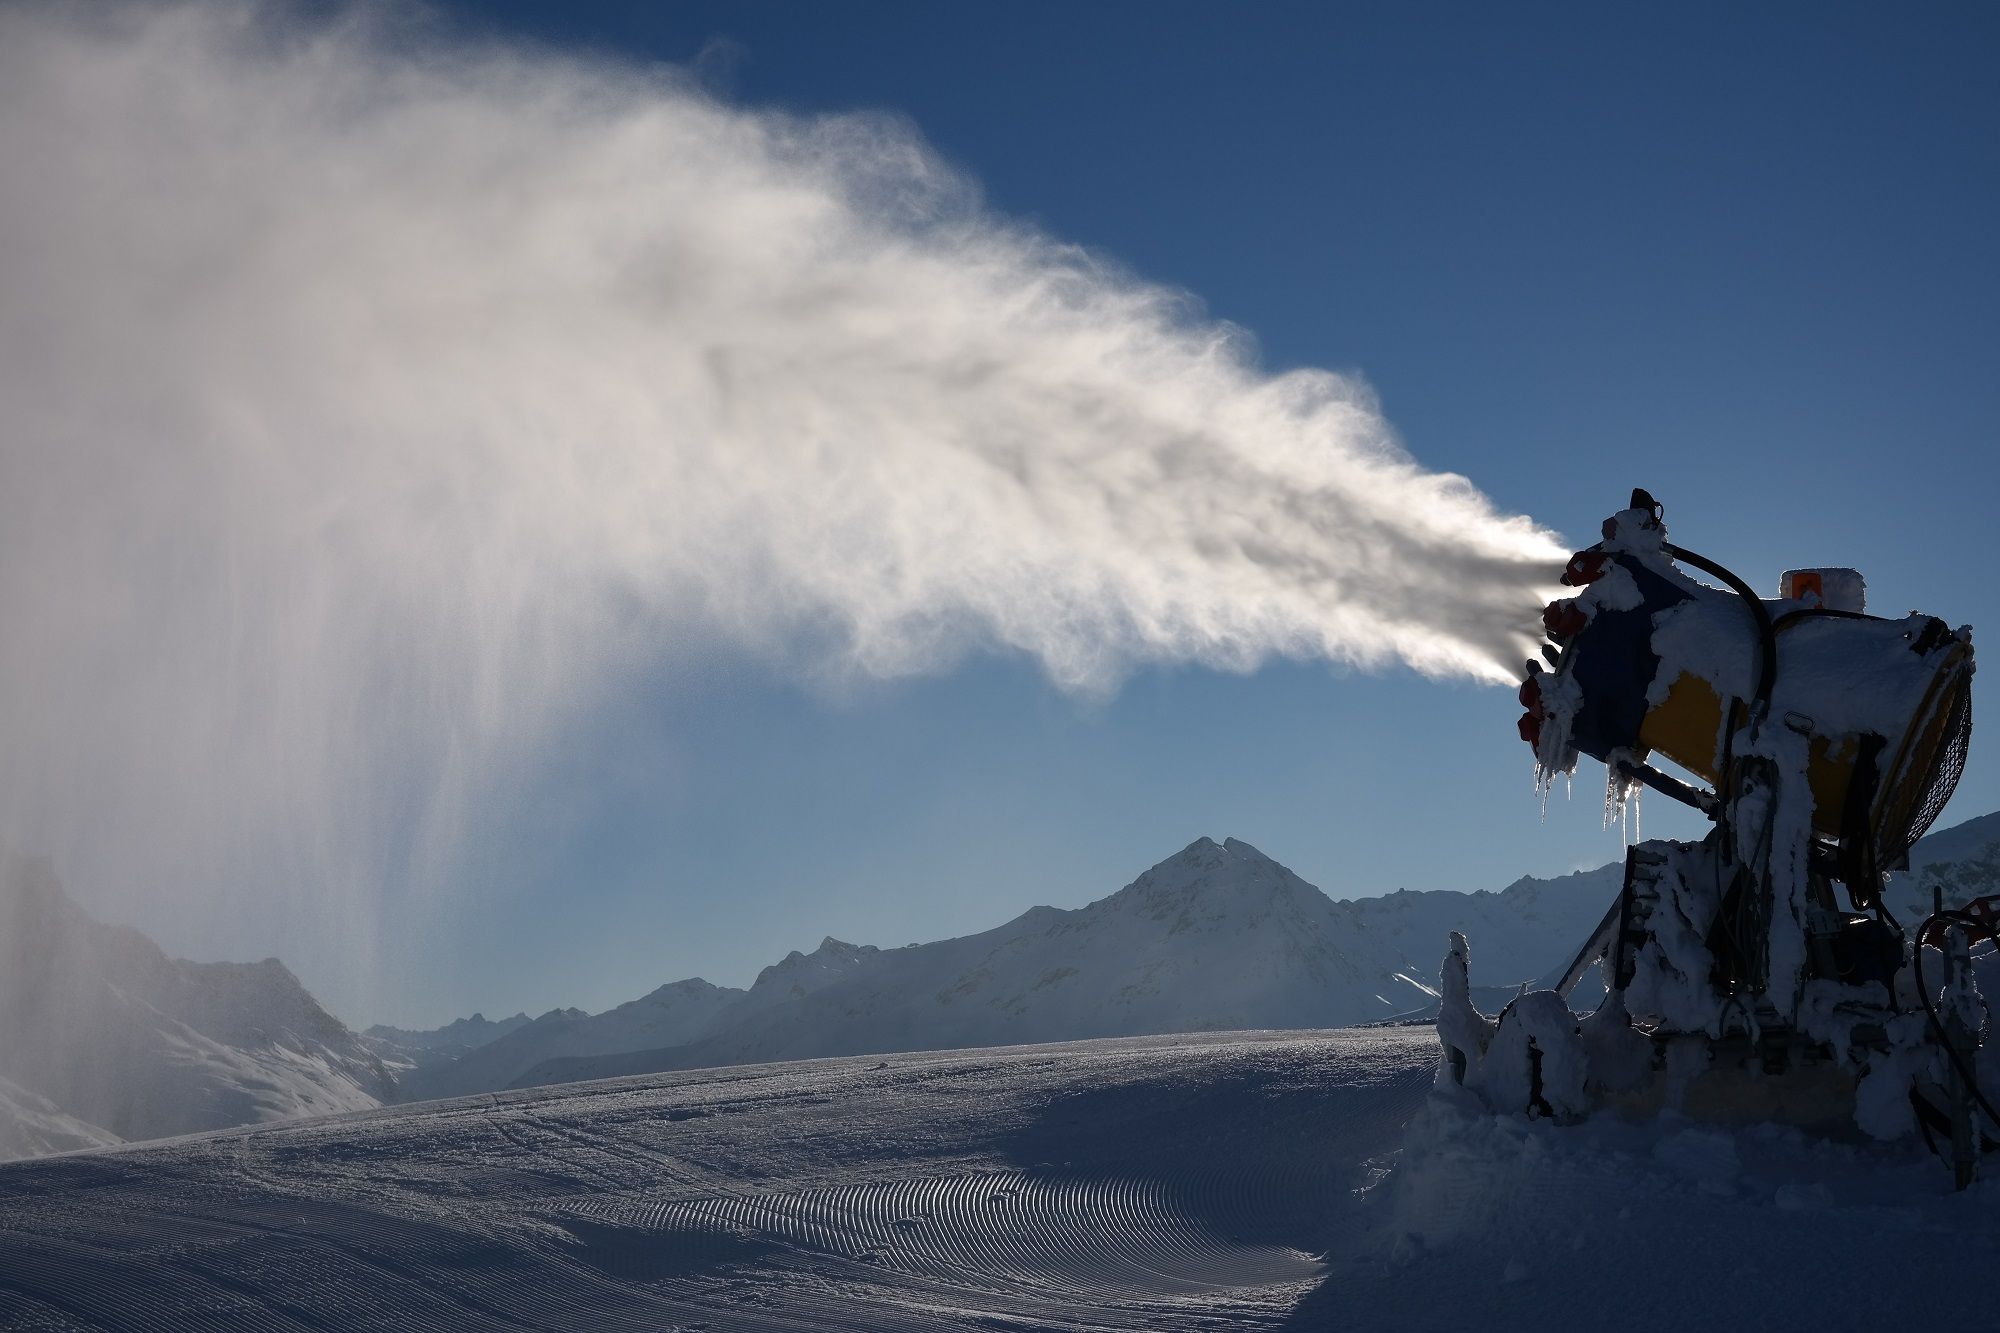 Nieve artificial más sostenible en España que podría ‘salvar’  el esquí